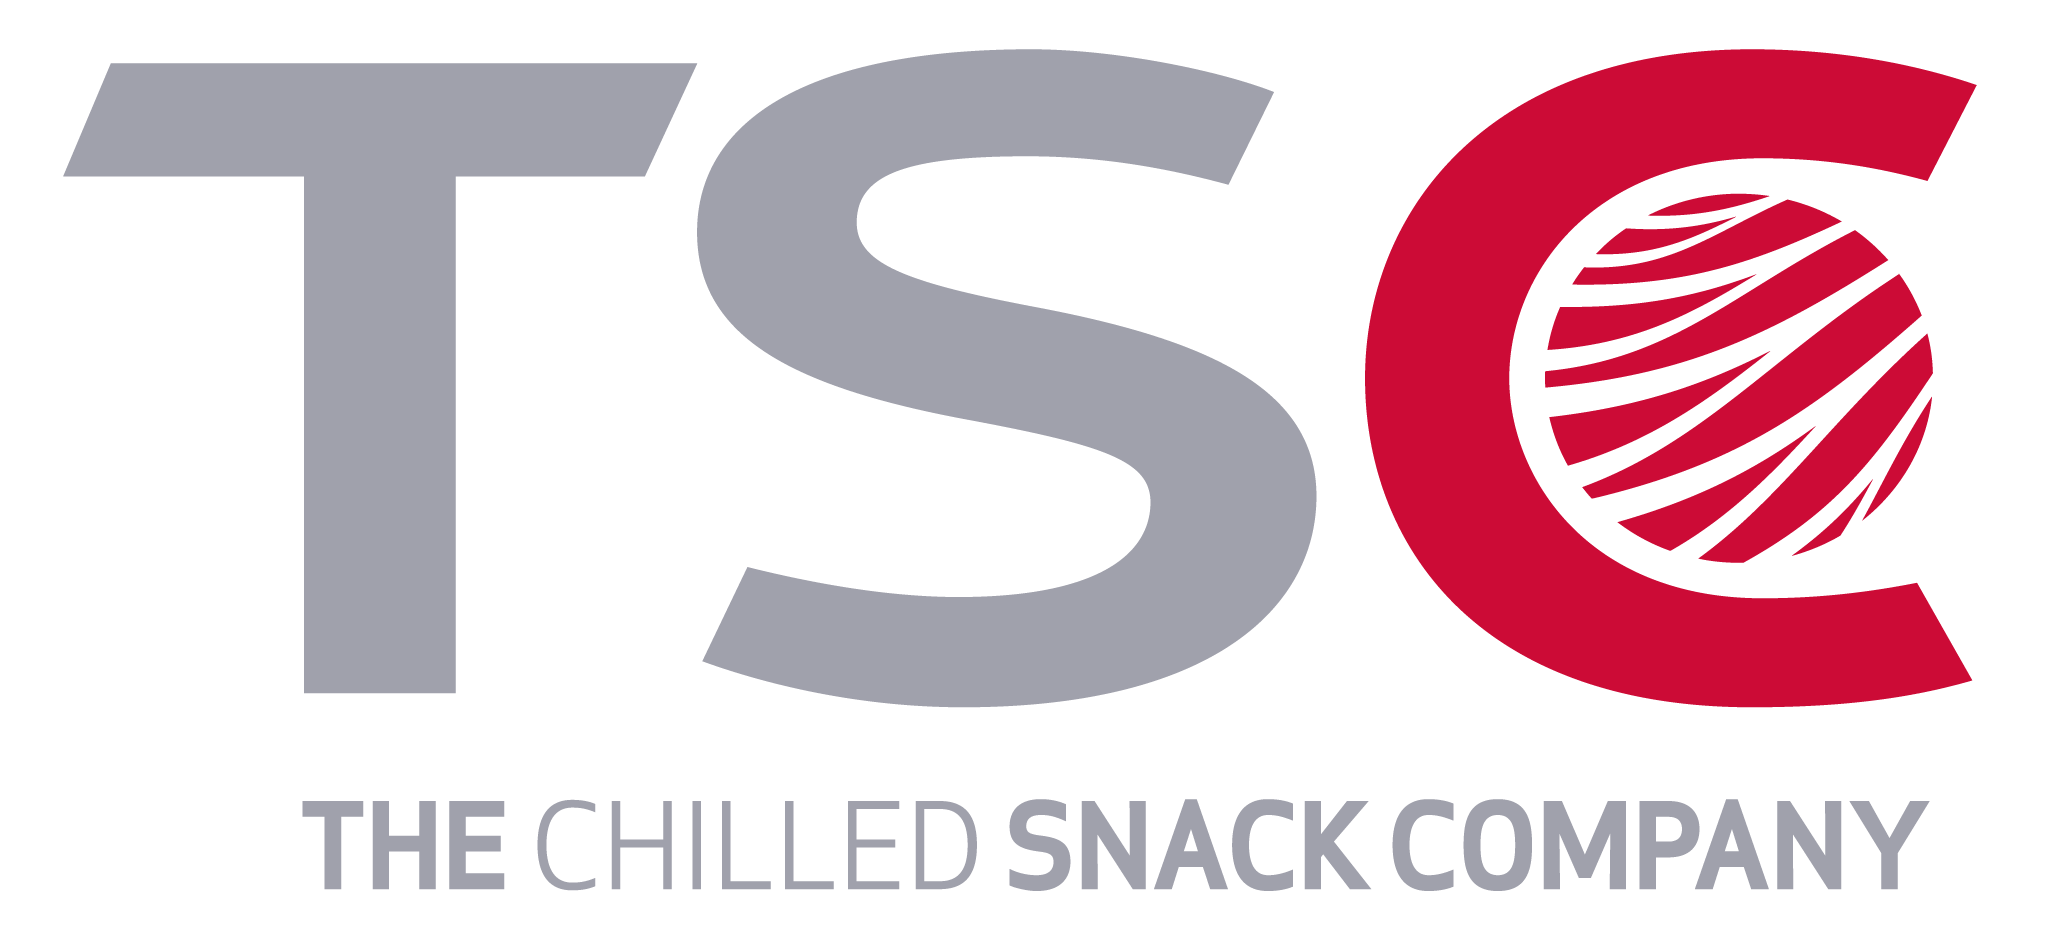 TSC Logo - Tsc Logo NEU Chilled Snack Company